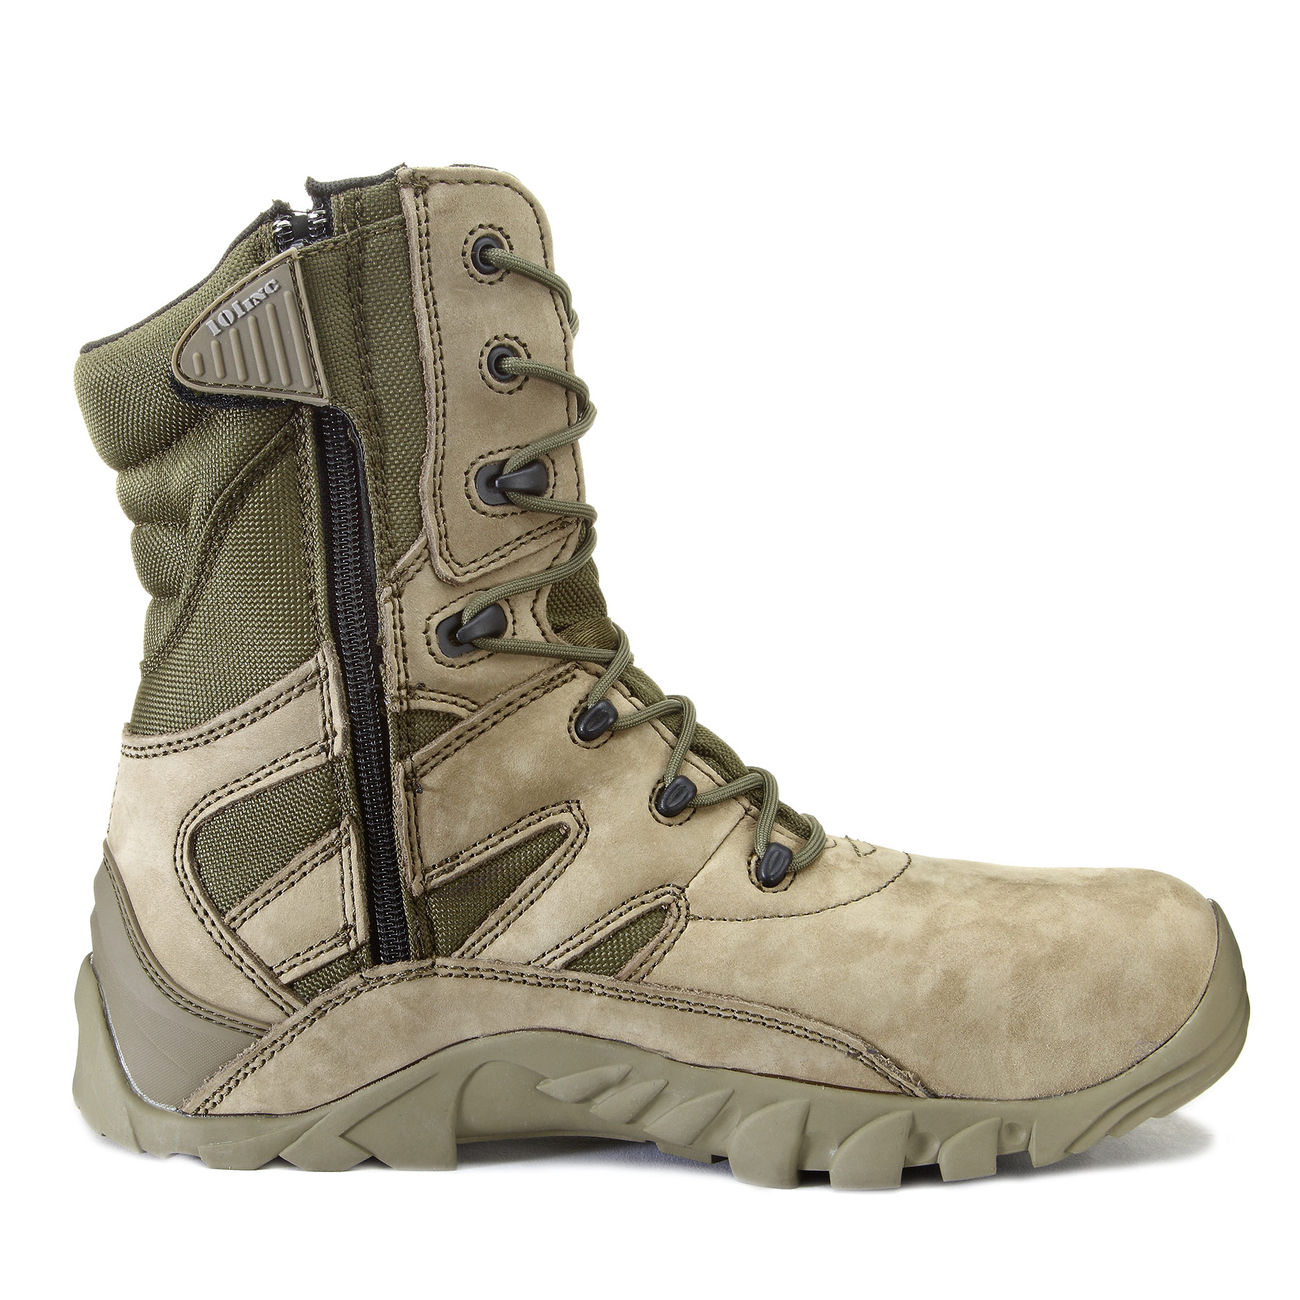 101 INC. Stiefel Tactical Boots Recon grün Bild 2